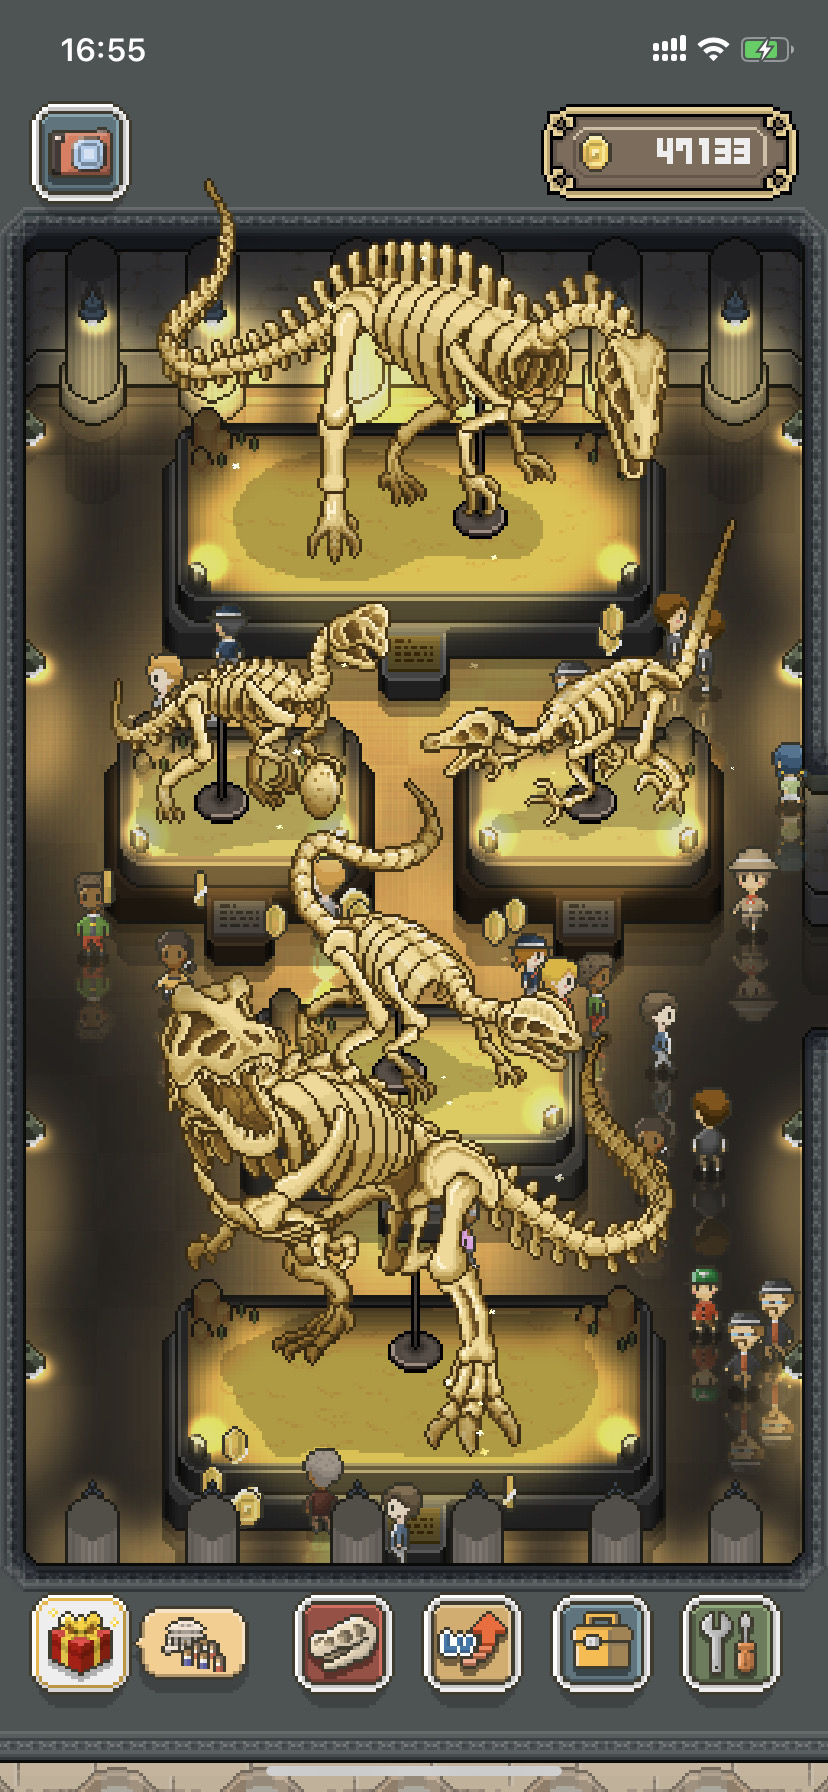 我的化石博物馆兽脚龙图鉴 兽脚龙特点说明